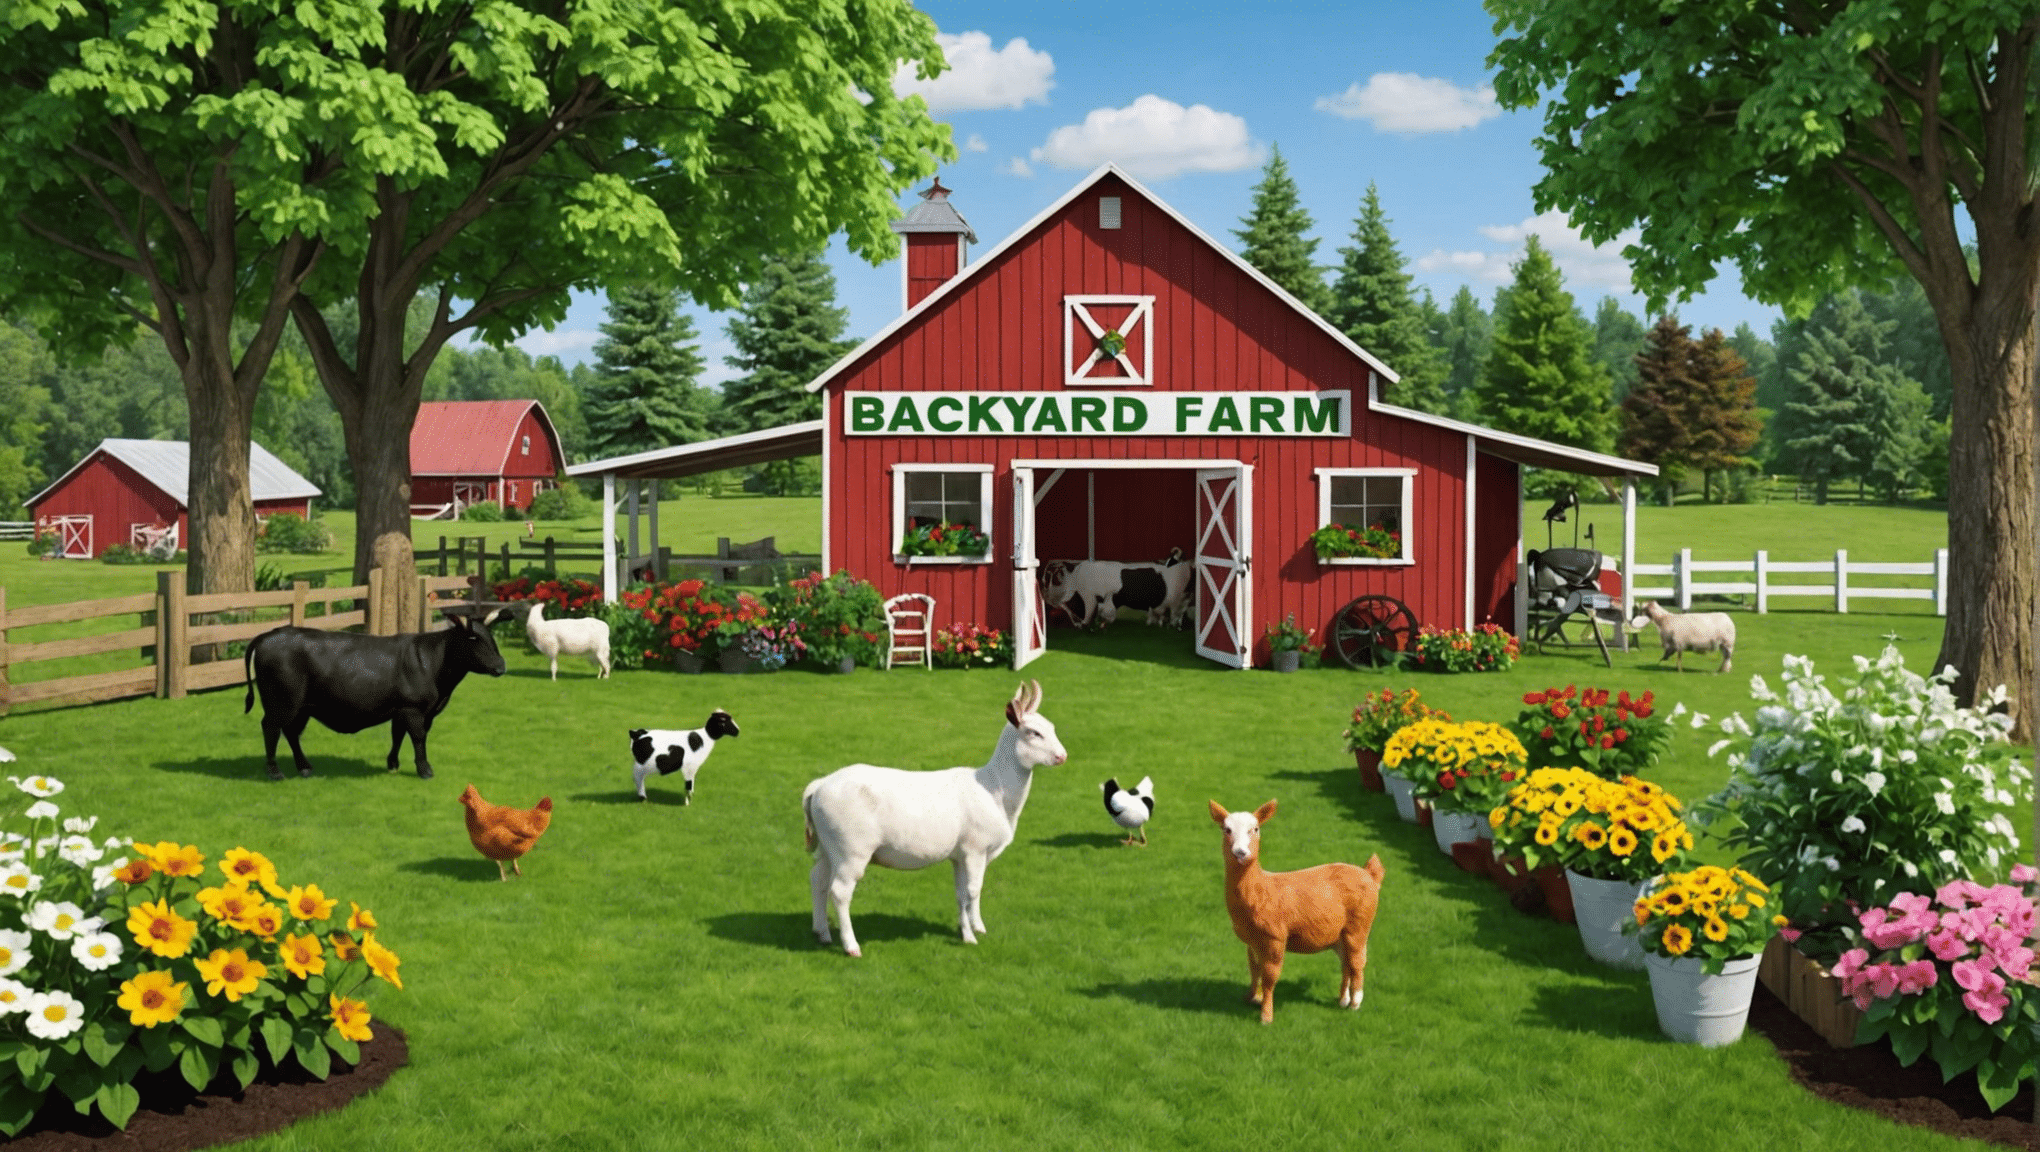 impara come ospitare un coinvolgente spettacolo di animali da fattoria nel cortile e crea un evento memorabile con i nostri suggerimenti e consigli.